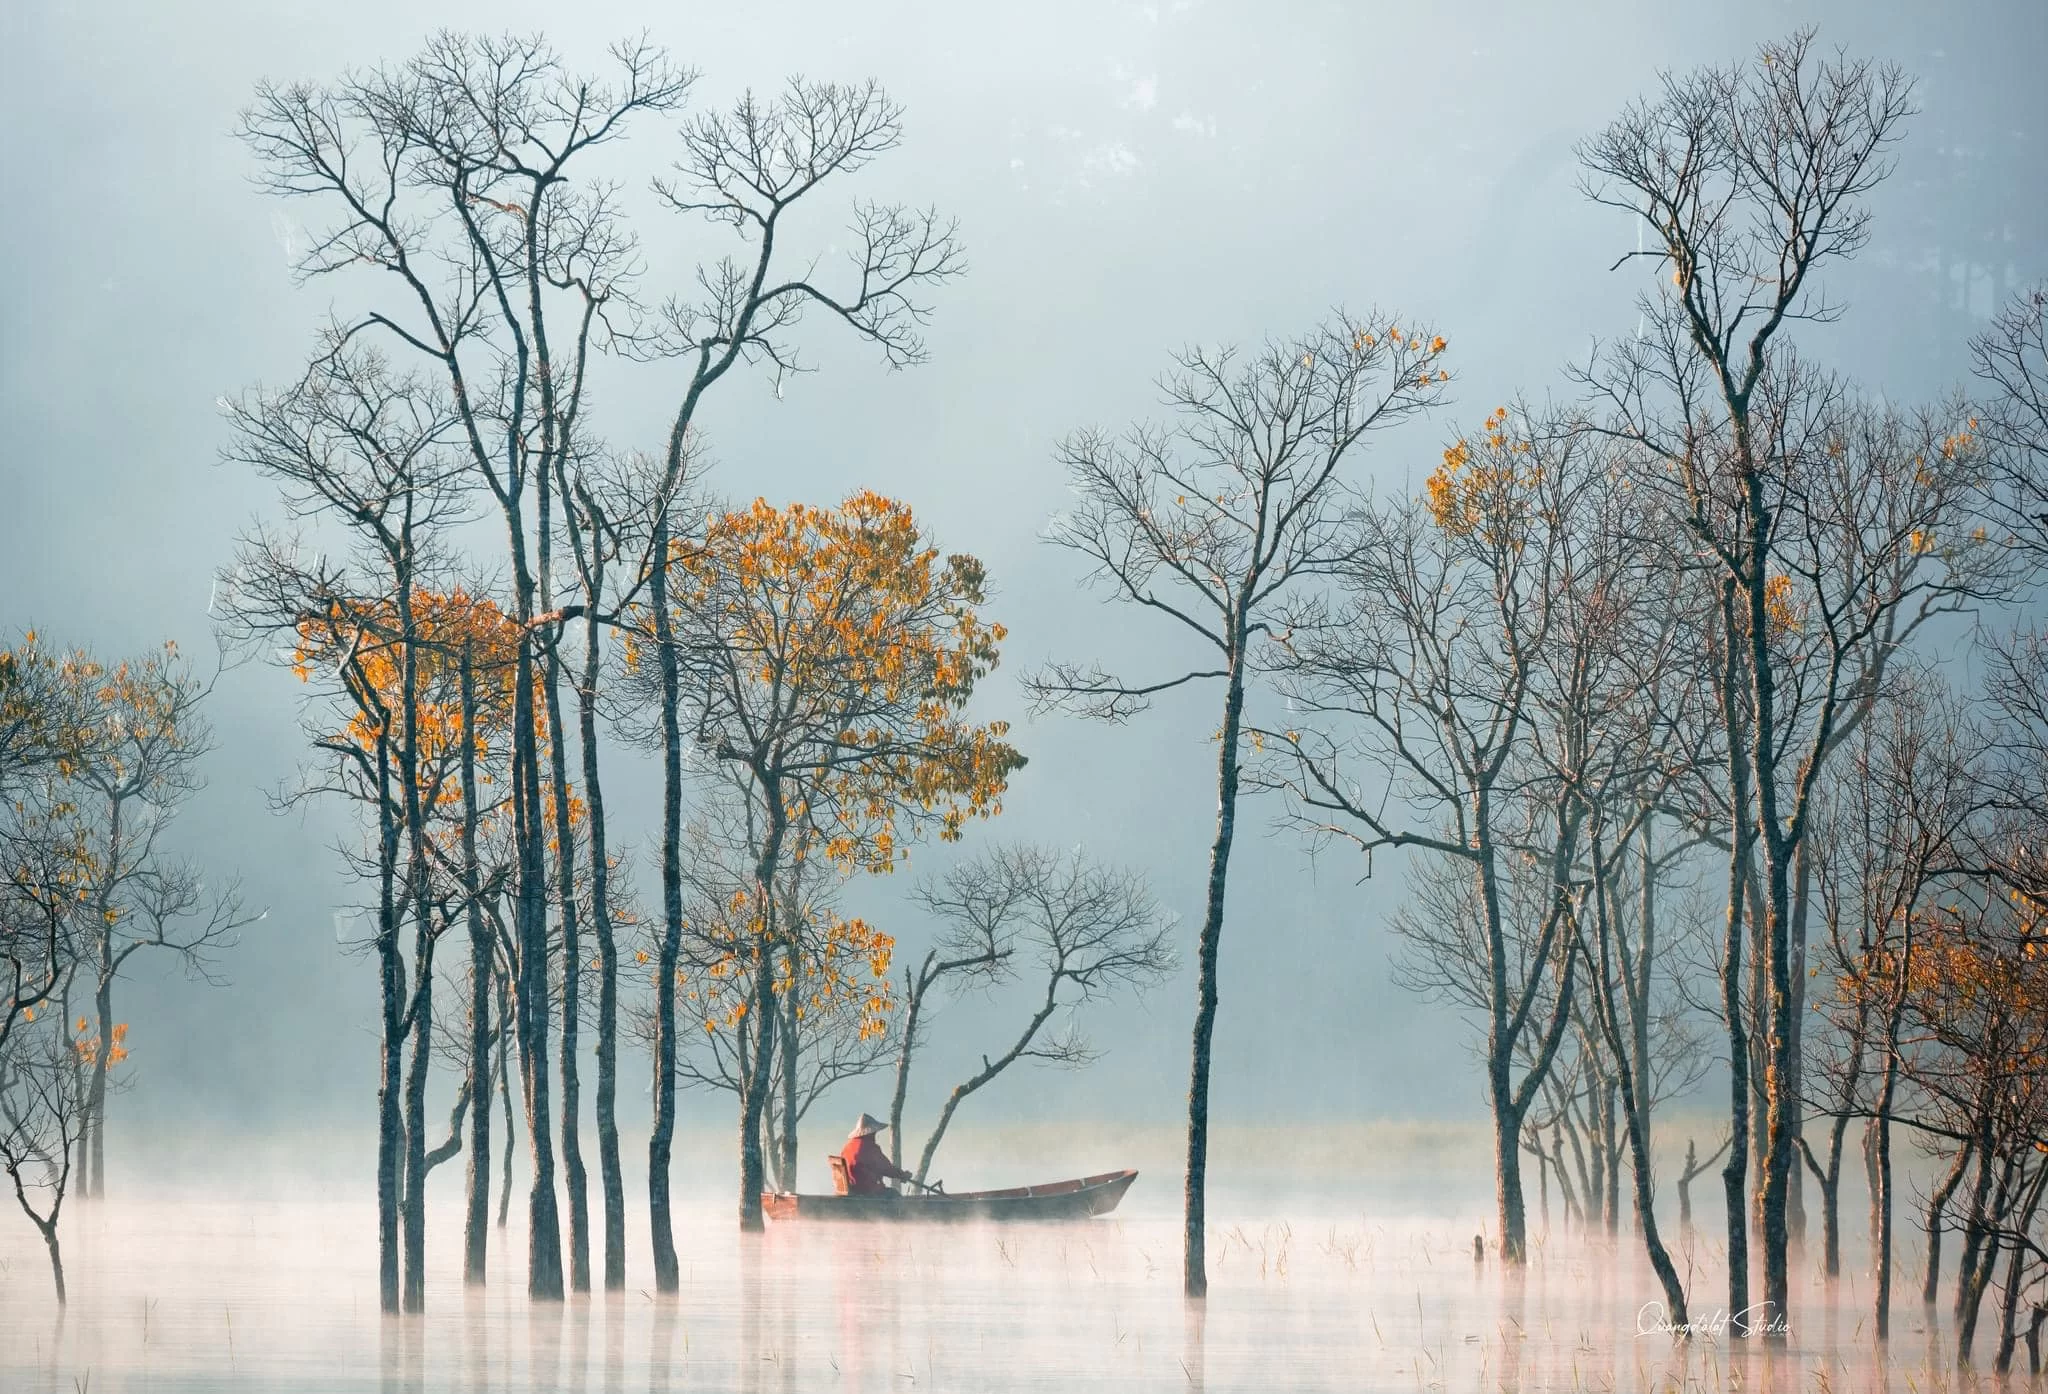 Mùa Thu lá rụng ở Hồ Tuyền Lâm - Đà Lạt như một bức tranh Thủy mạc hút hồn người xem